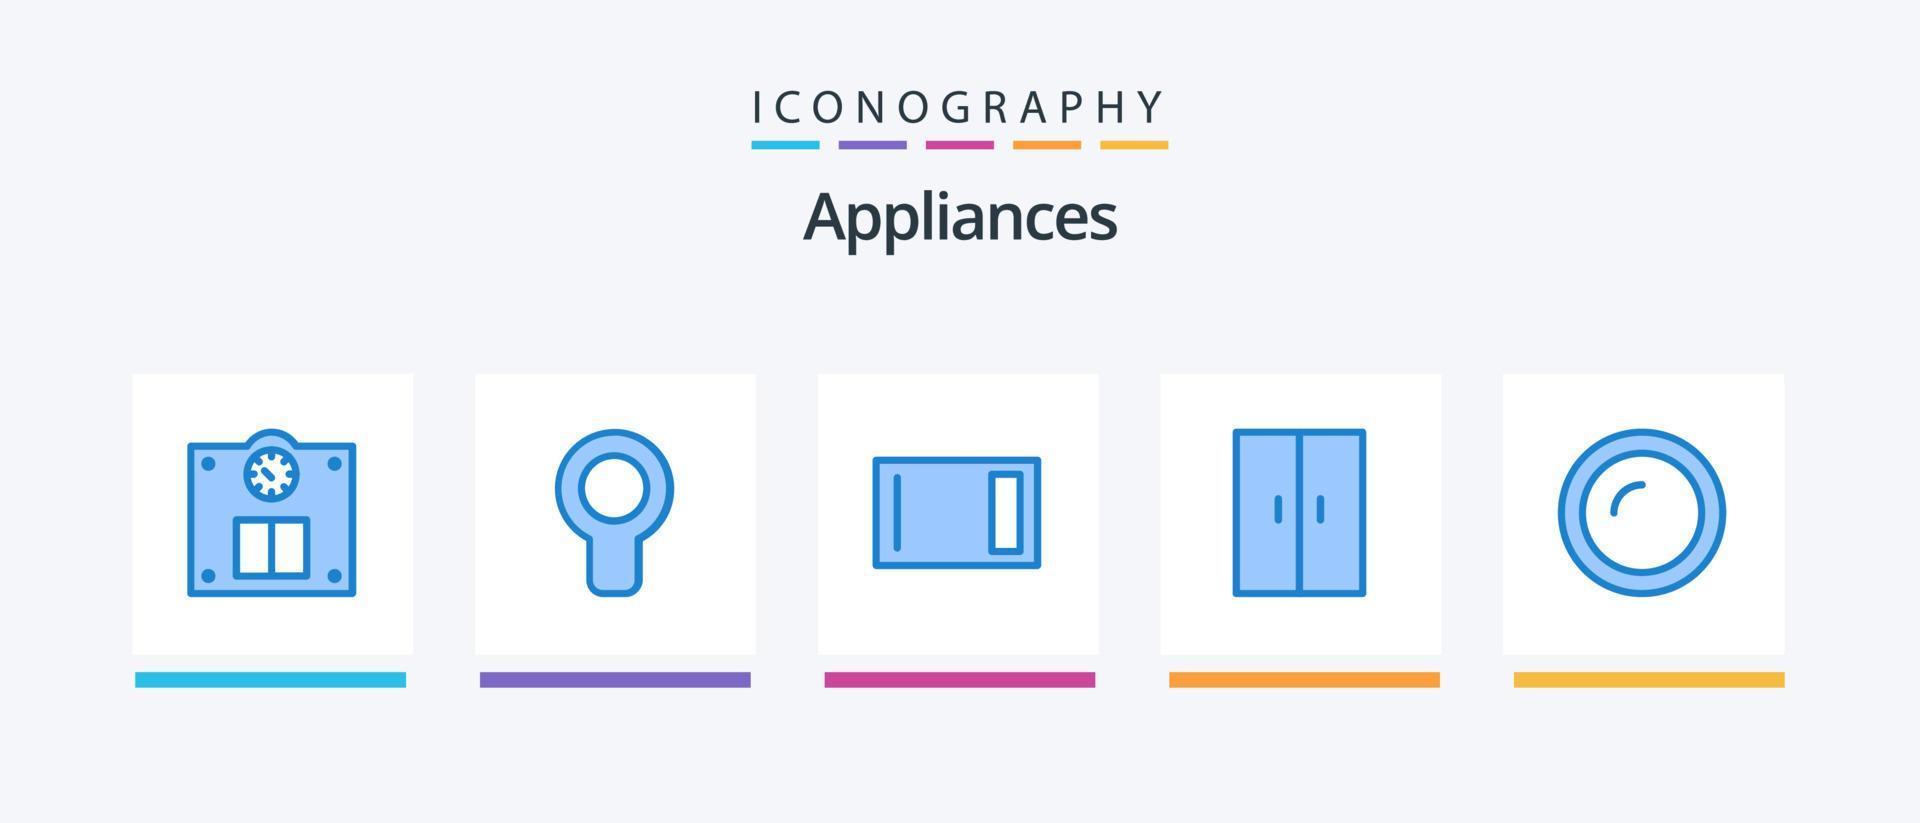 electrodomésticos paquete de iconos azul 5 que incluye electrodomésticos. electrodomésticos. accesorios. hogar. artículos para el hogar diseño de iconos creativos vector